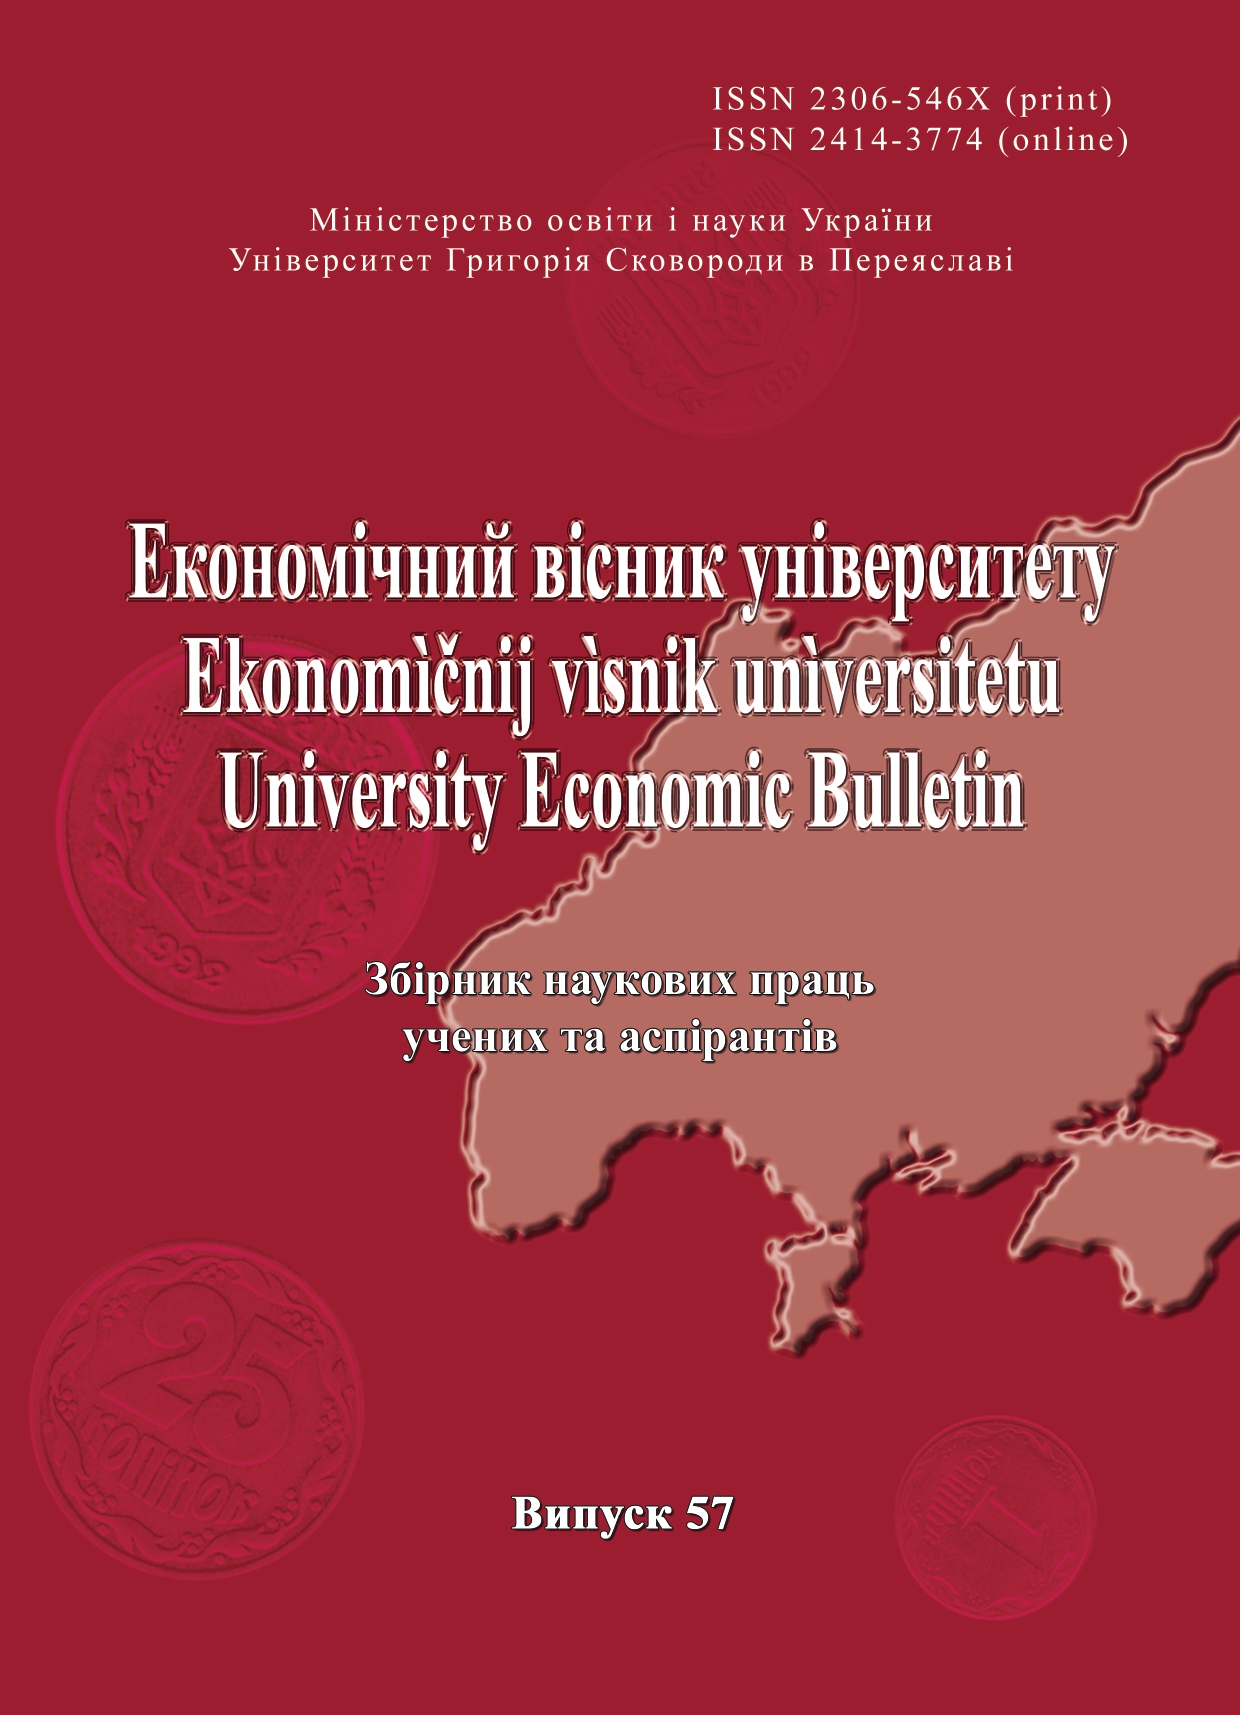 Дисбаланс ринку праці України: сучасні тенденції та орієнтири подолання диспропорцій